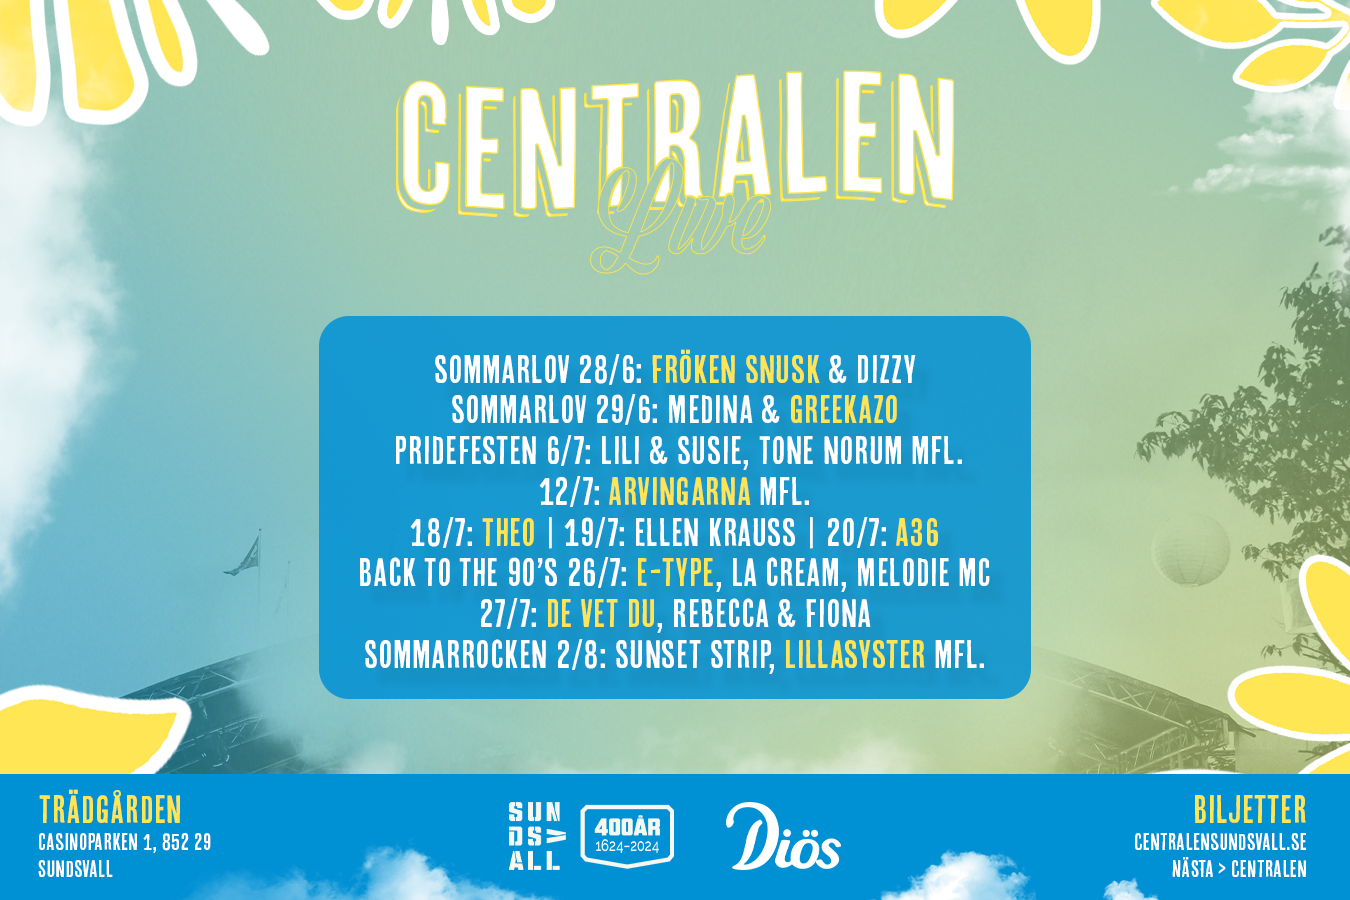 Bild av en affisch, det står Centralen stort sen en lista på vilka artister som ska uppträda under sommaren. Listan finns i texten nedan. 